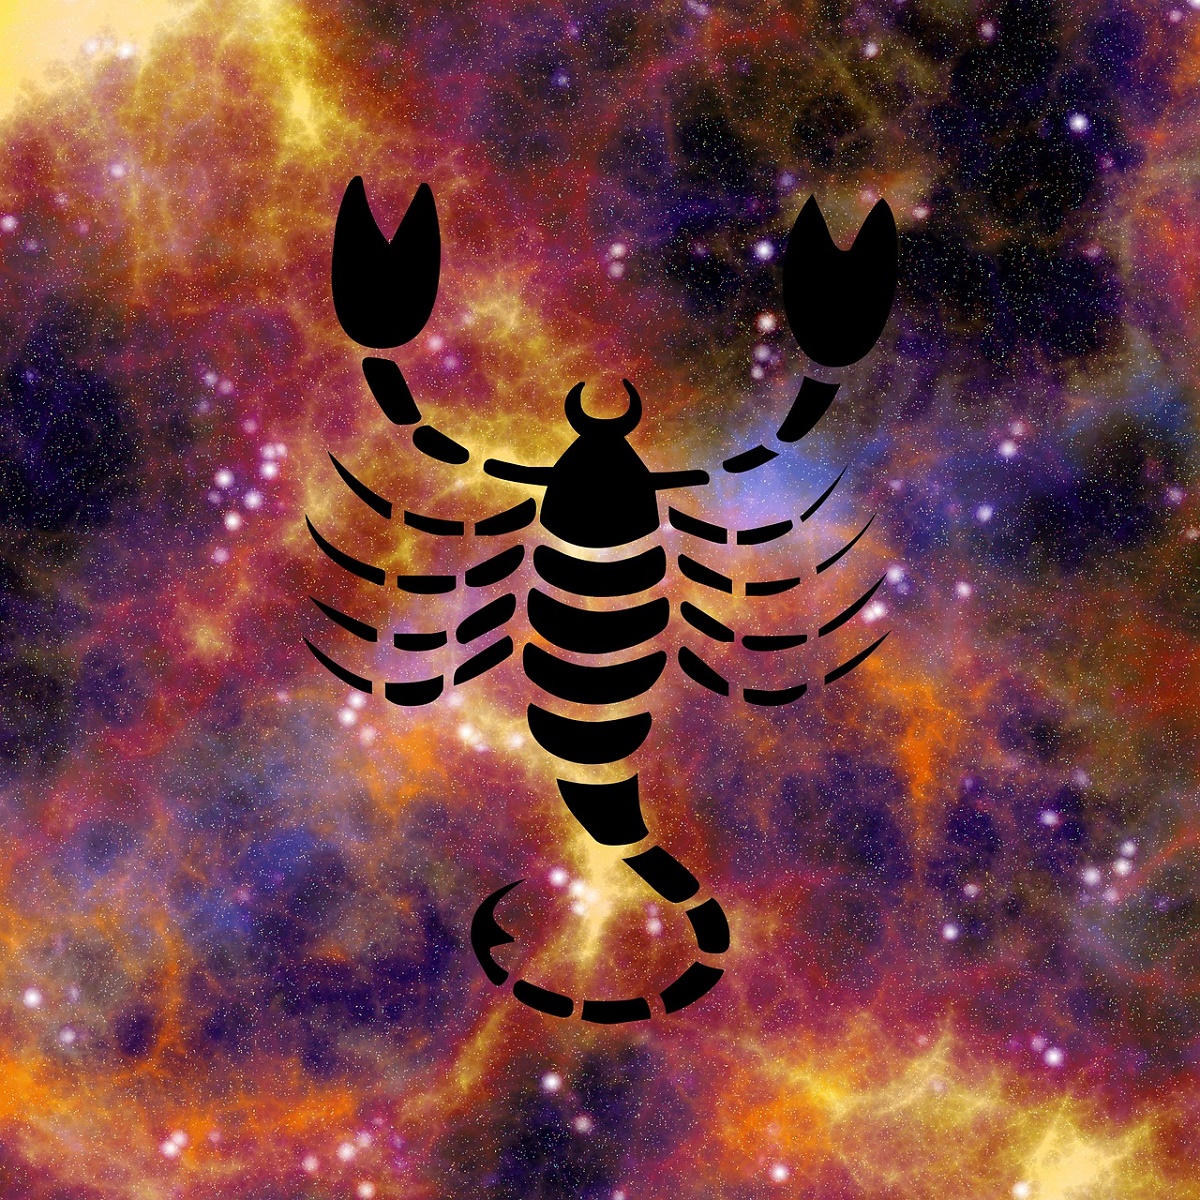 Horoscop februarie 2018 Scorpion - Oana Hanganu. Ce se anunță în această lună pentru nativii din zodia Scorpion, conform astrologului.